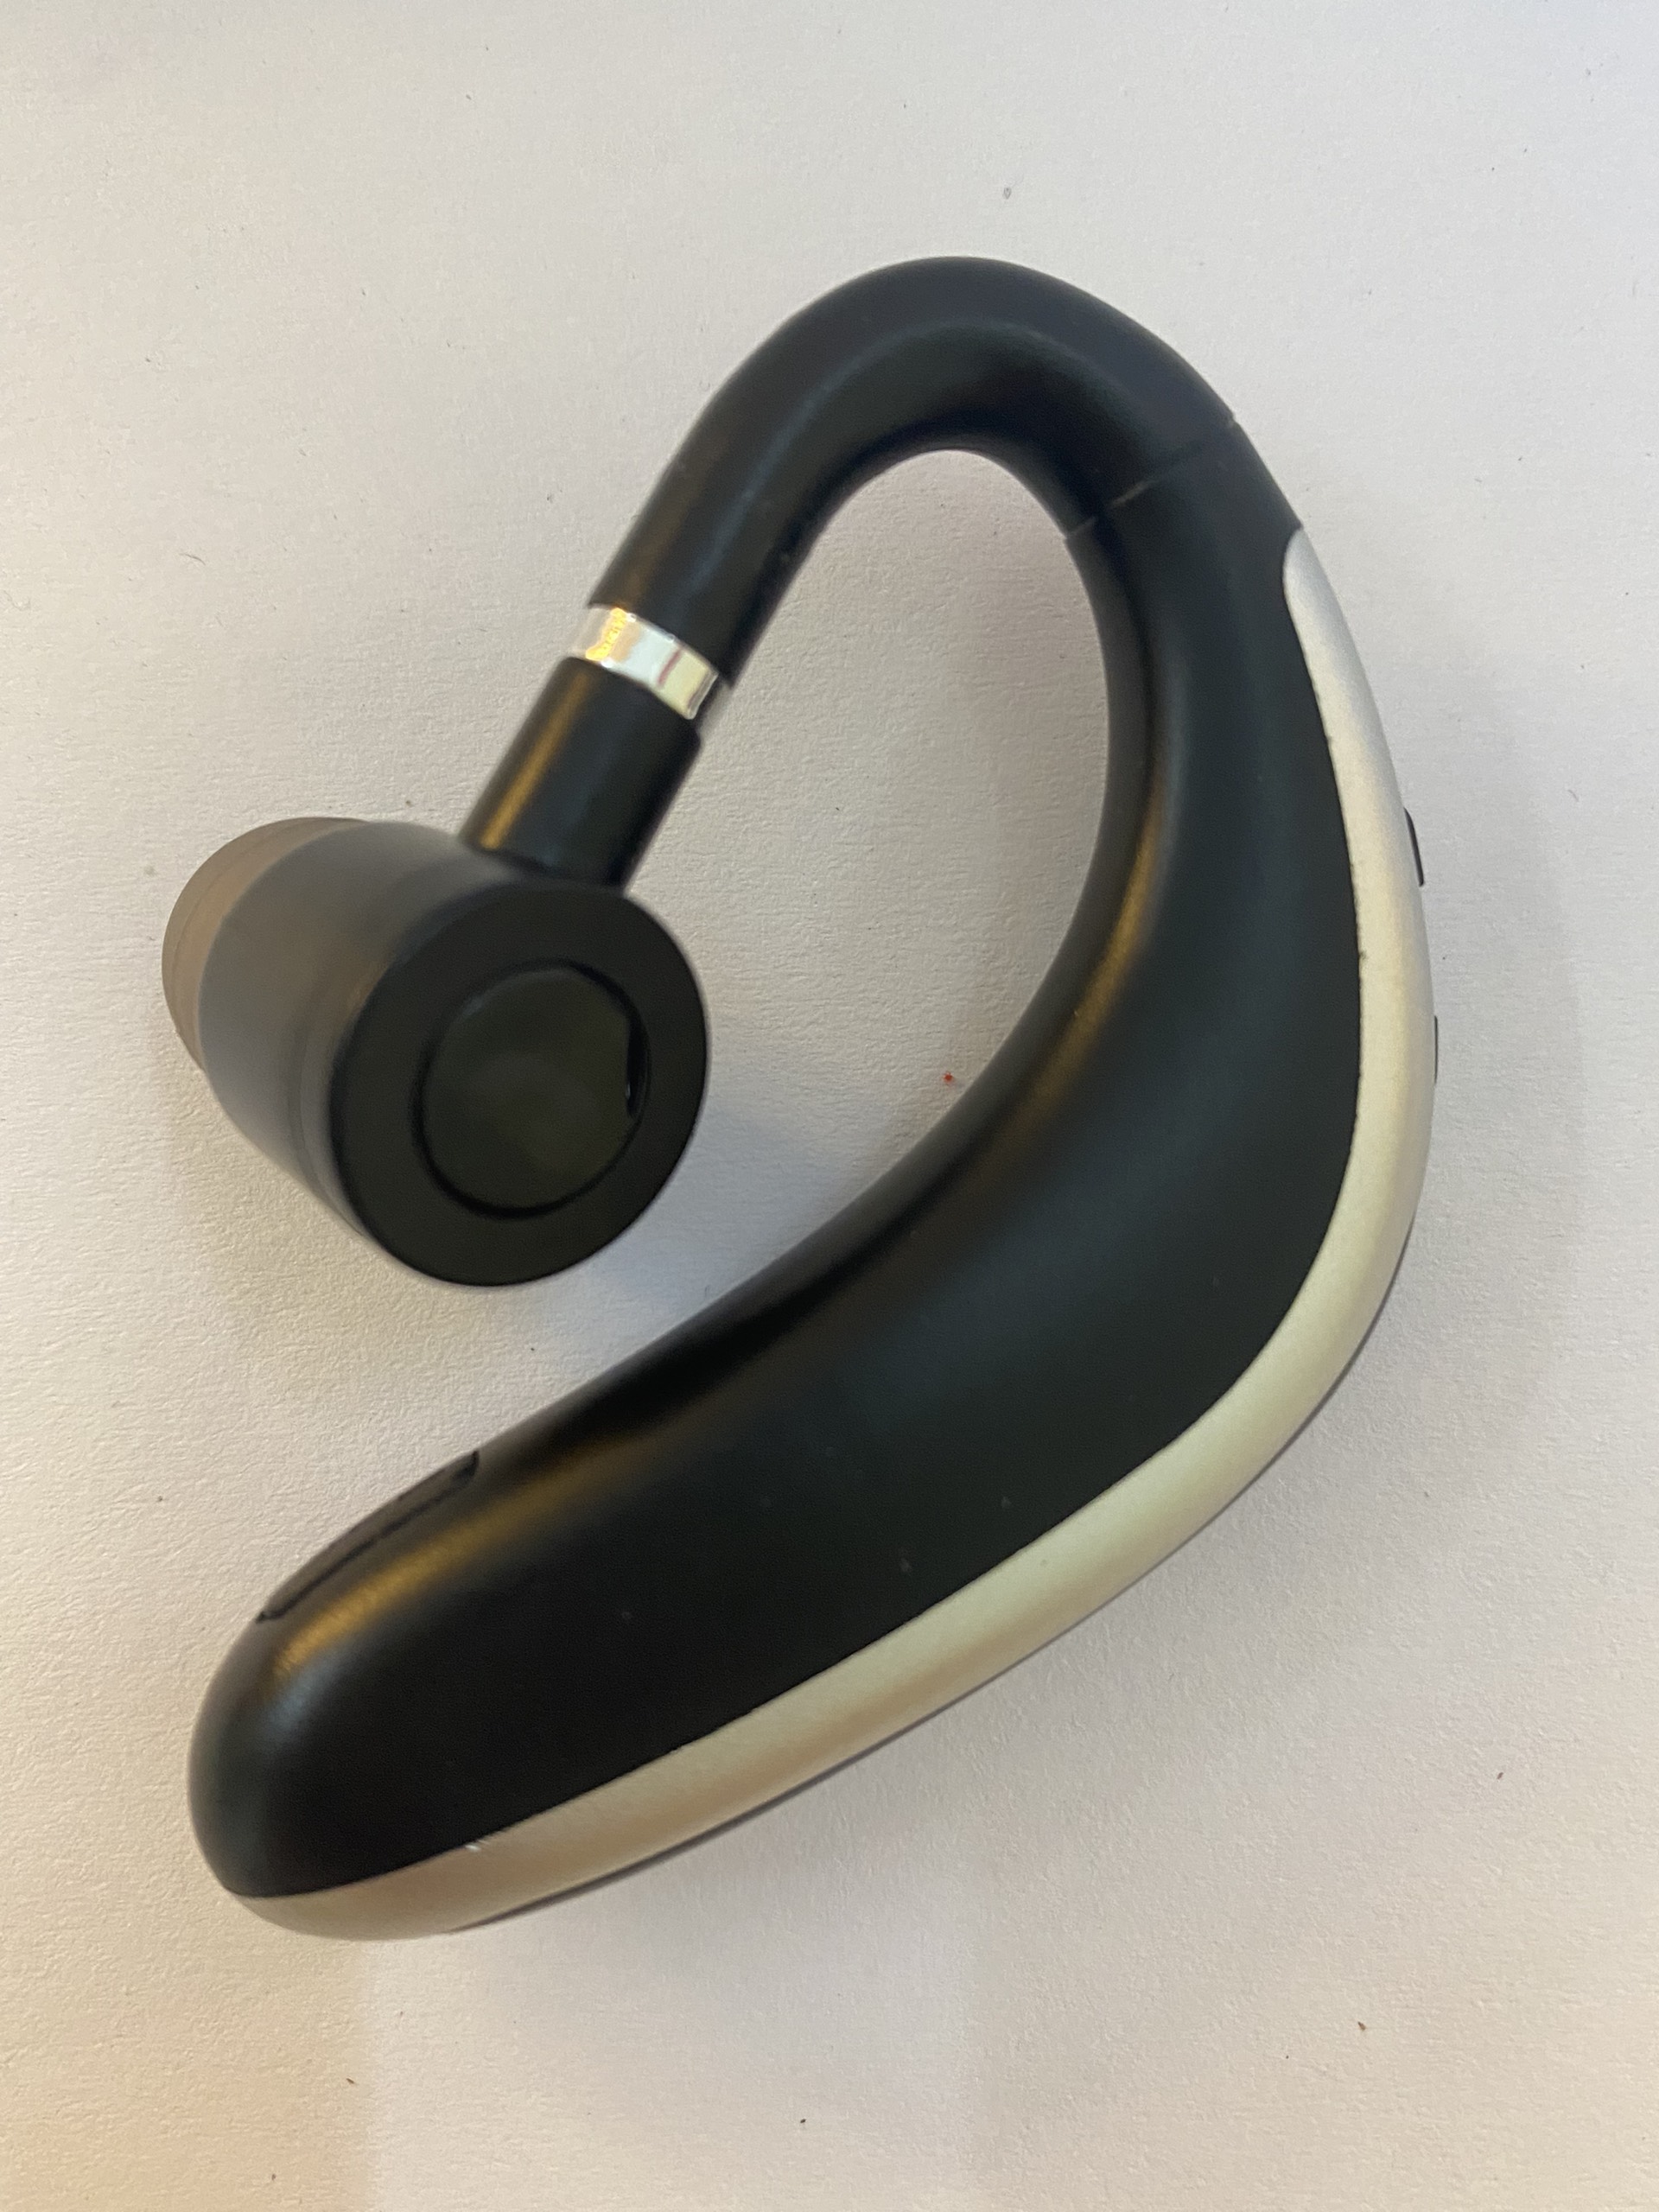 Tai Nghe Bluetooth 5.2 Có Micro K20, Tai nghe Móc tai pin trâu hỗ trợ Bluetooth 5.2 Sự Dụng Nhỏ gọn, Thích Hợp Cho Người Thường Xuyên Hoạt Động, Giao Hàng Nhanh